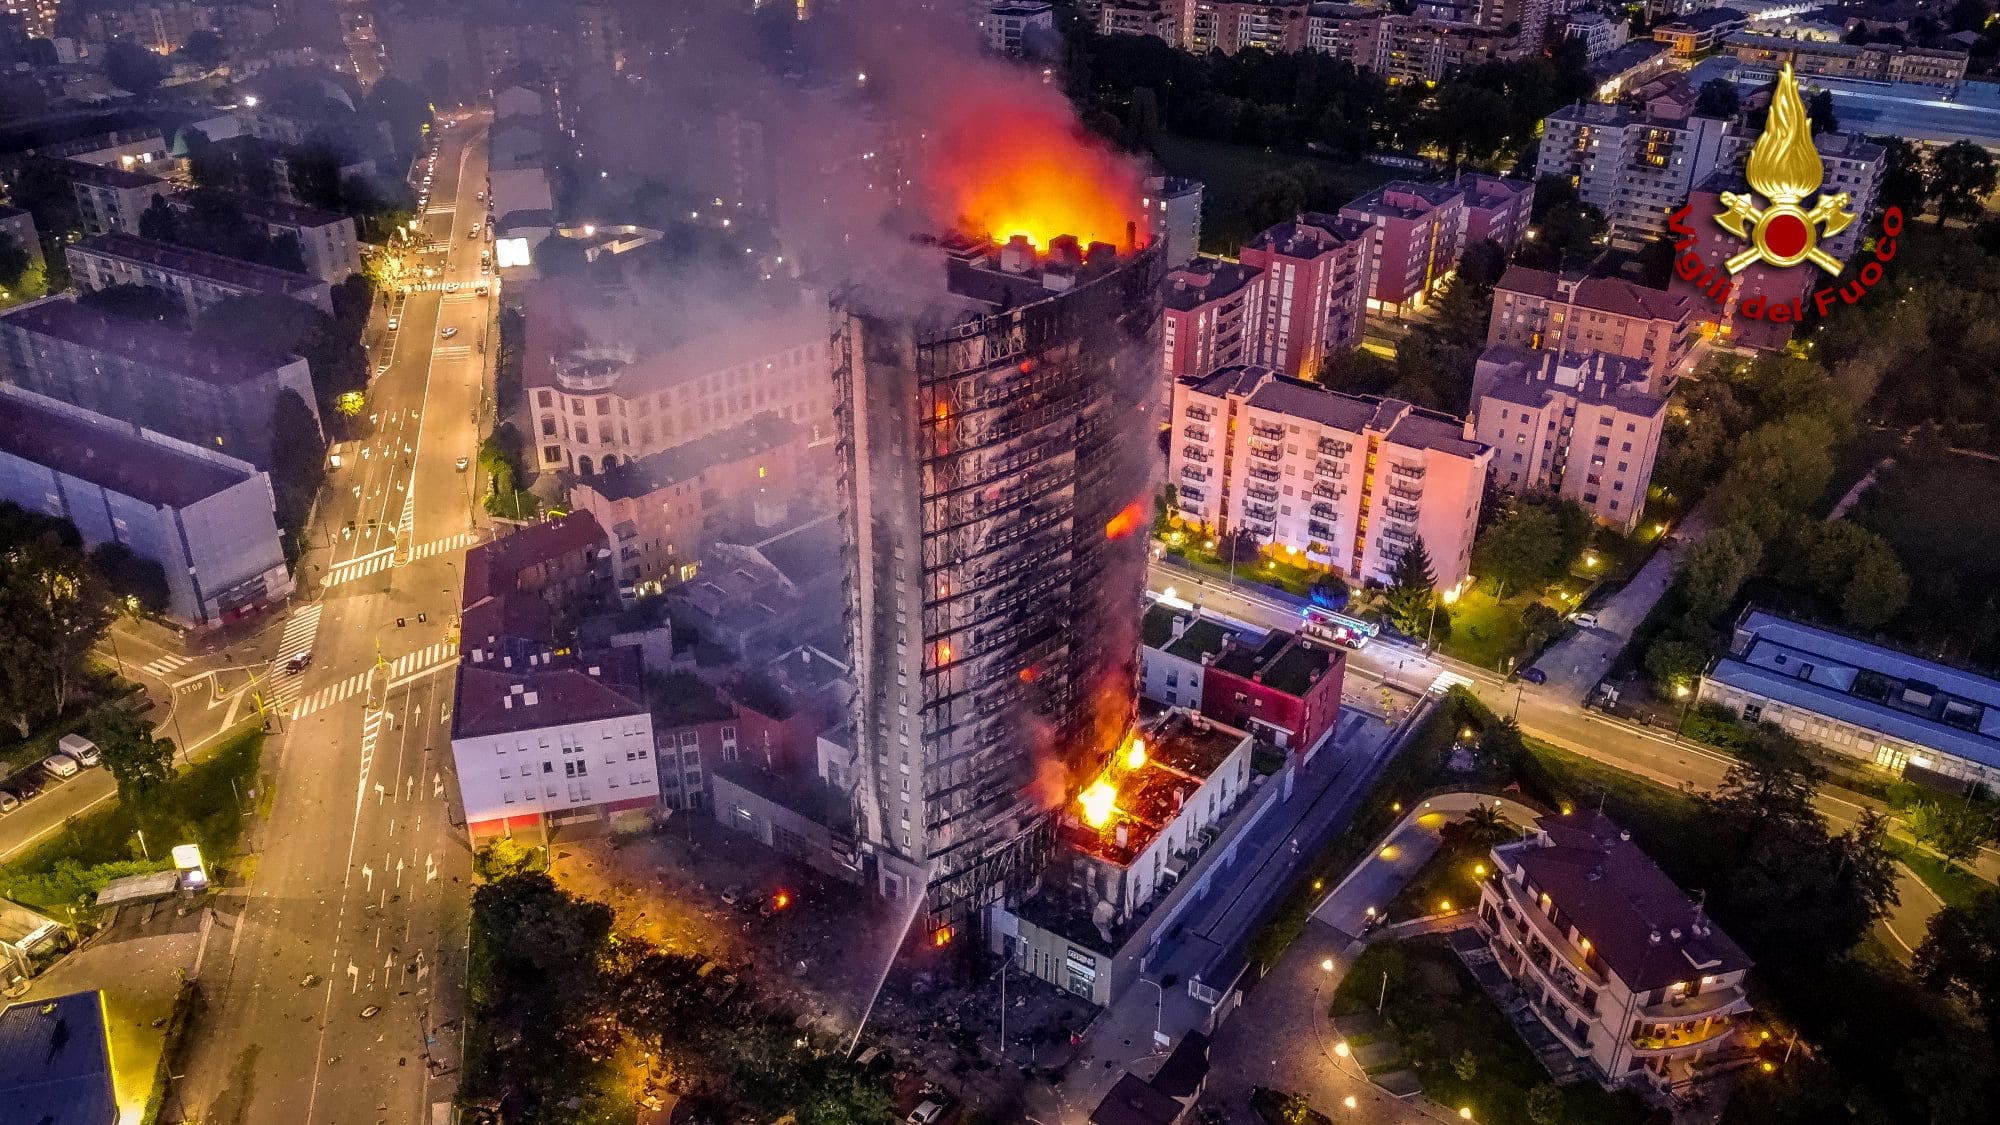 incendio-milano-grattacielo-dove-quanto-costa-appartamento-prezzi